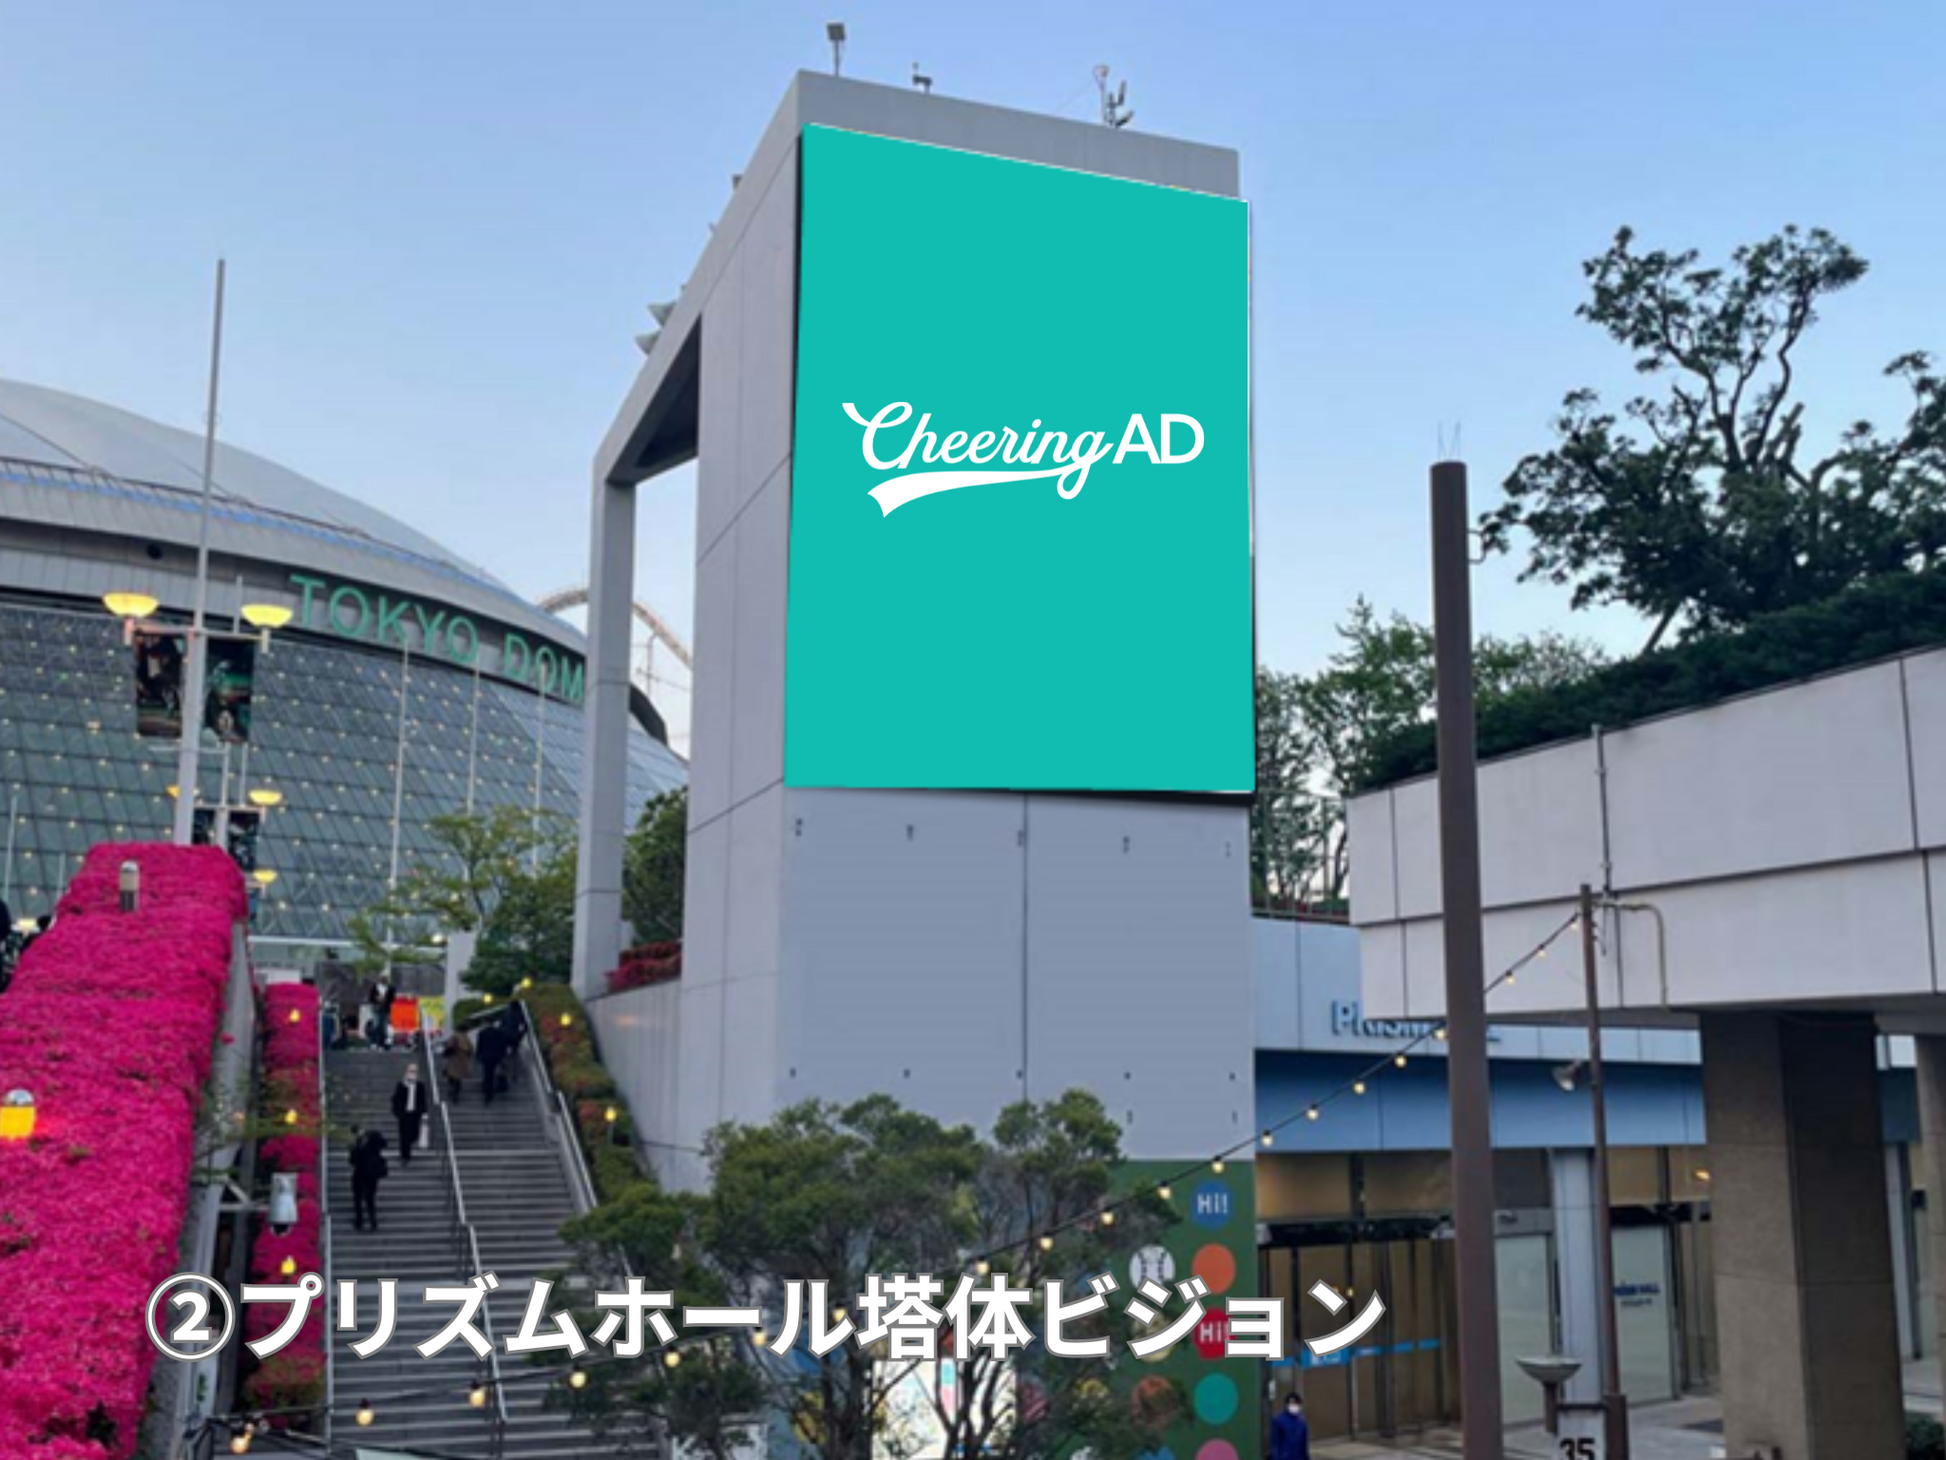 東京ドームシティビジョンズ 基本セット開放  プリズムホール塔体ビジョン_応援広告センイル広告_jeki